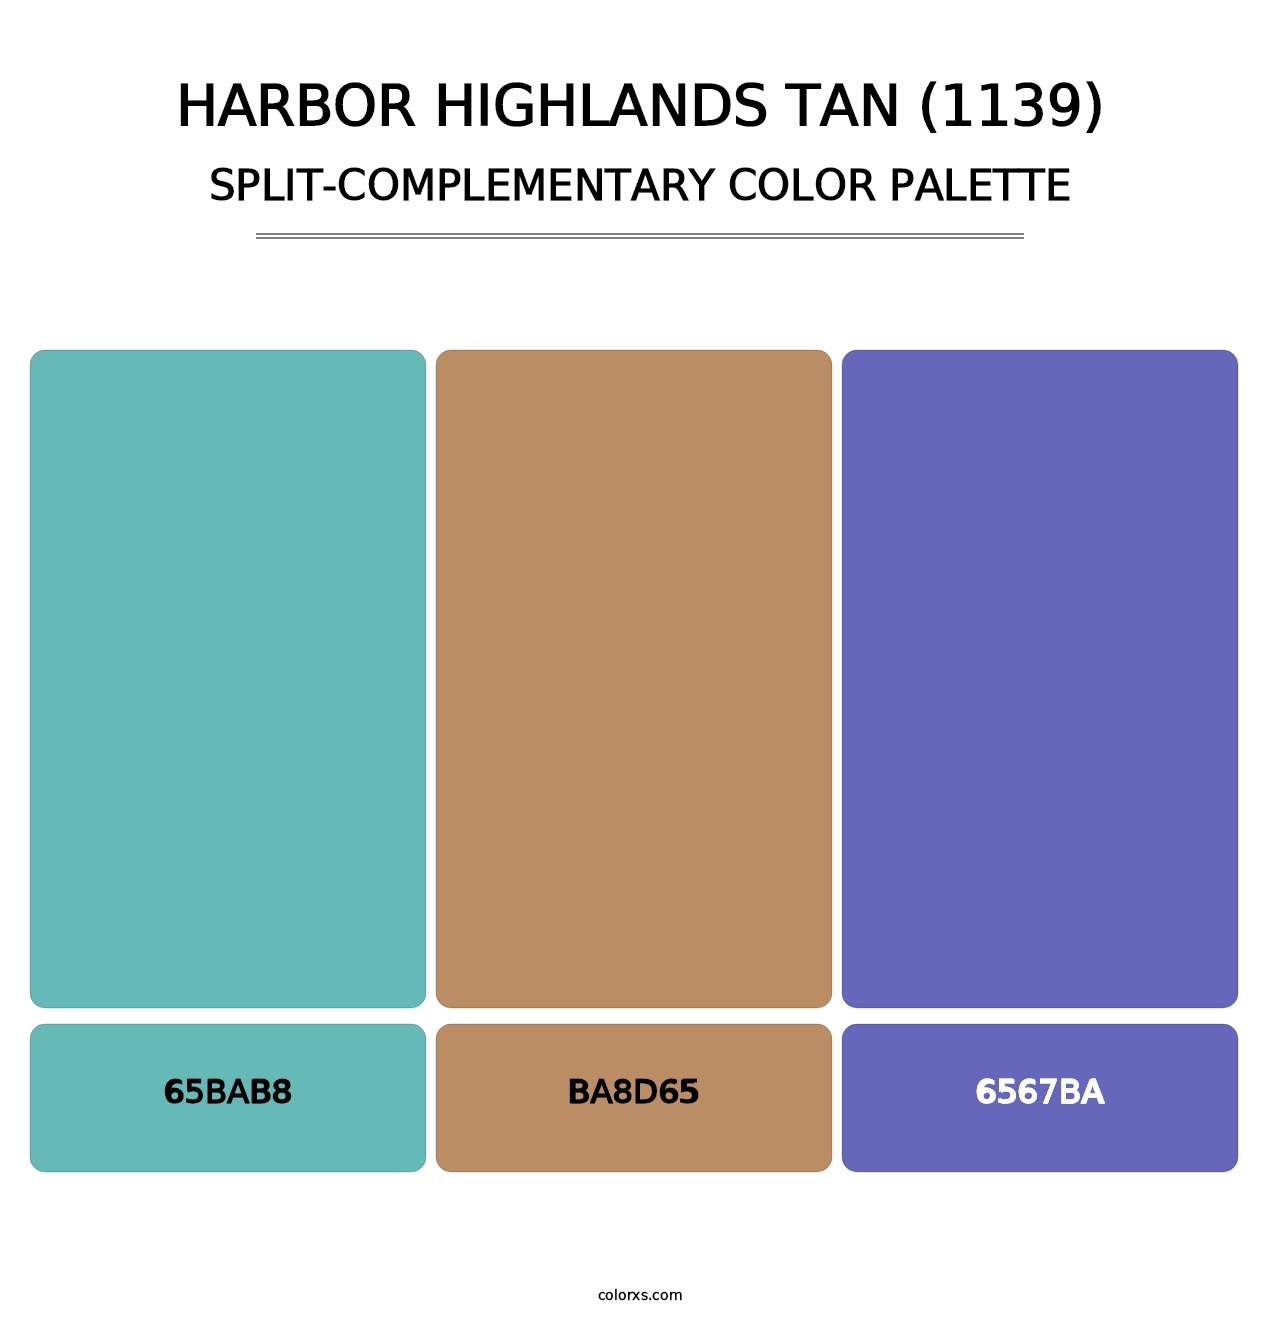 Harbor Highlands Tan (1139) - Split-Complementary Color Palette